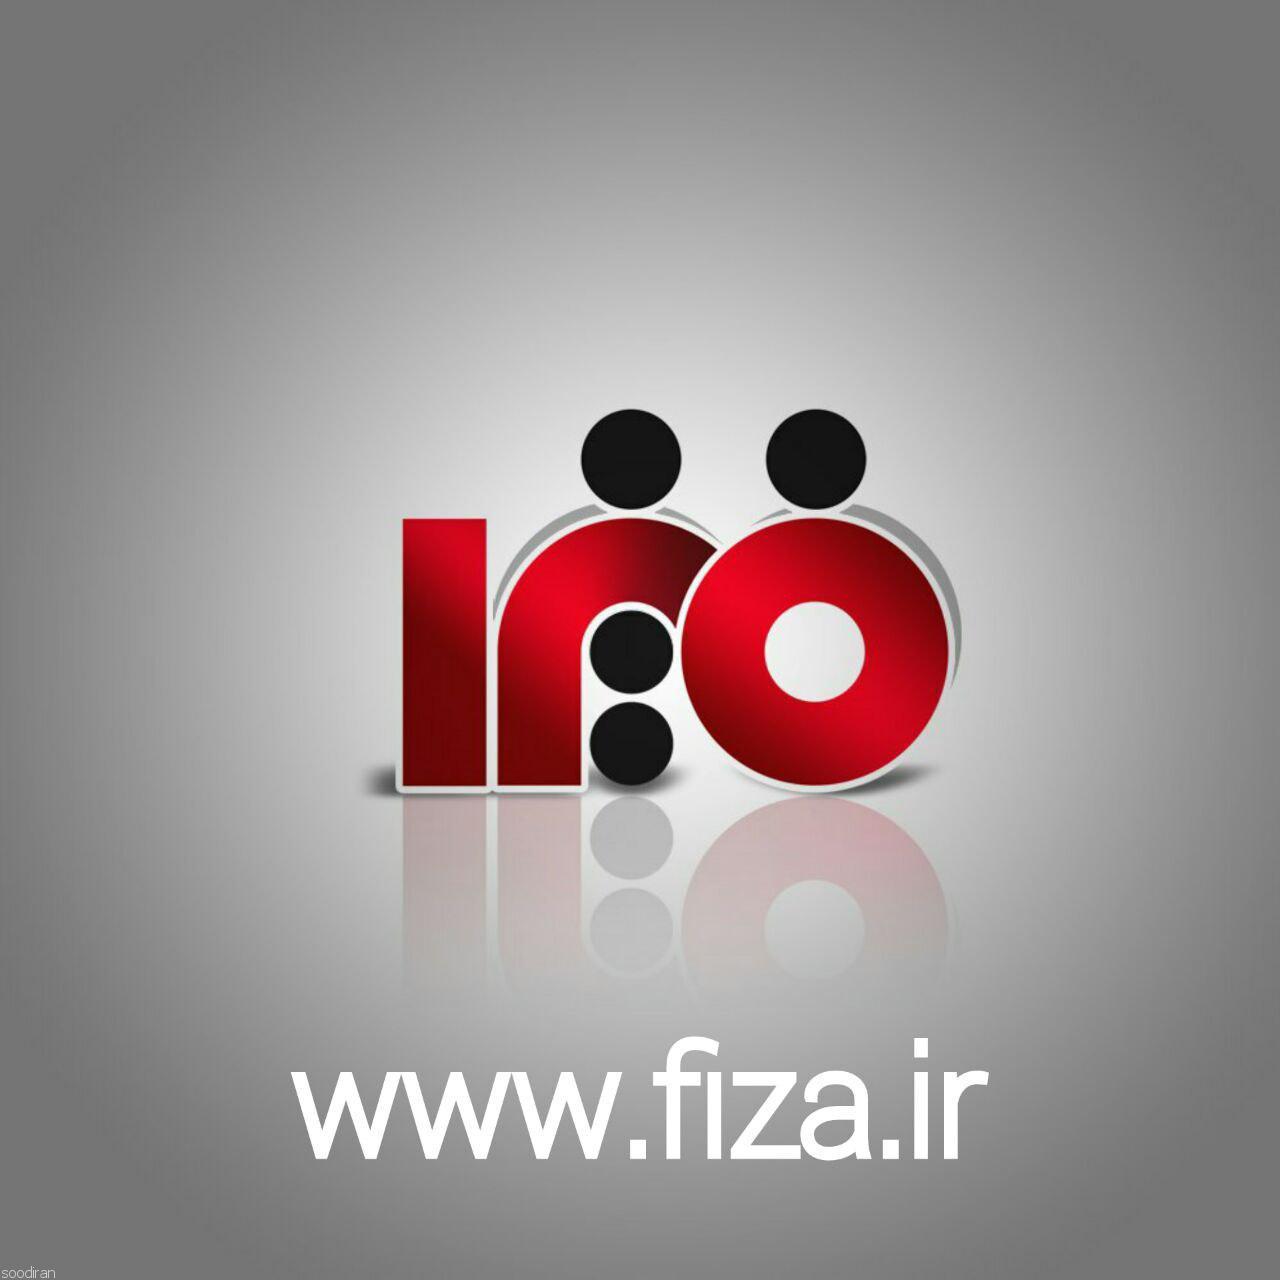 همکاری در فروش اینترنتی fiza.ir-pic1